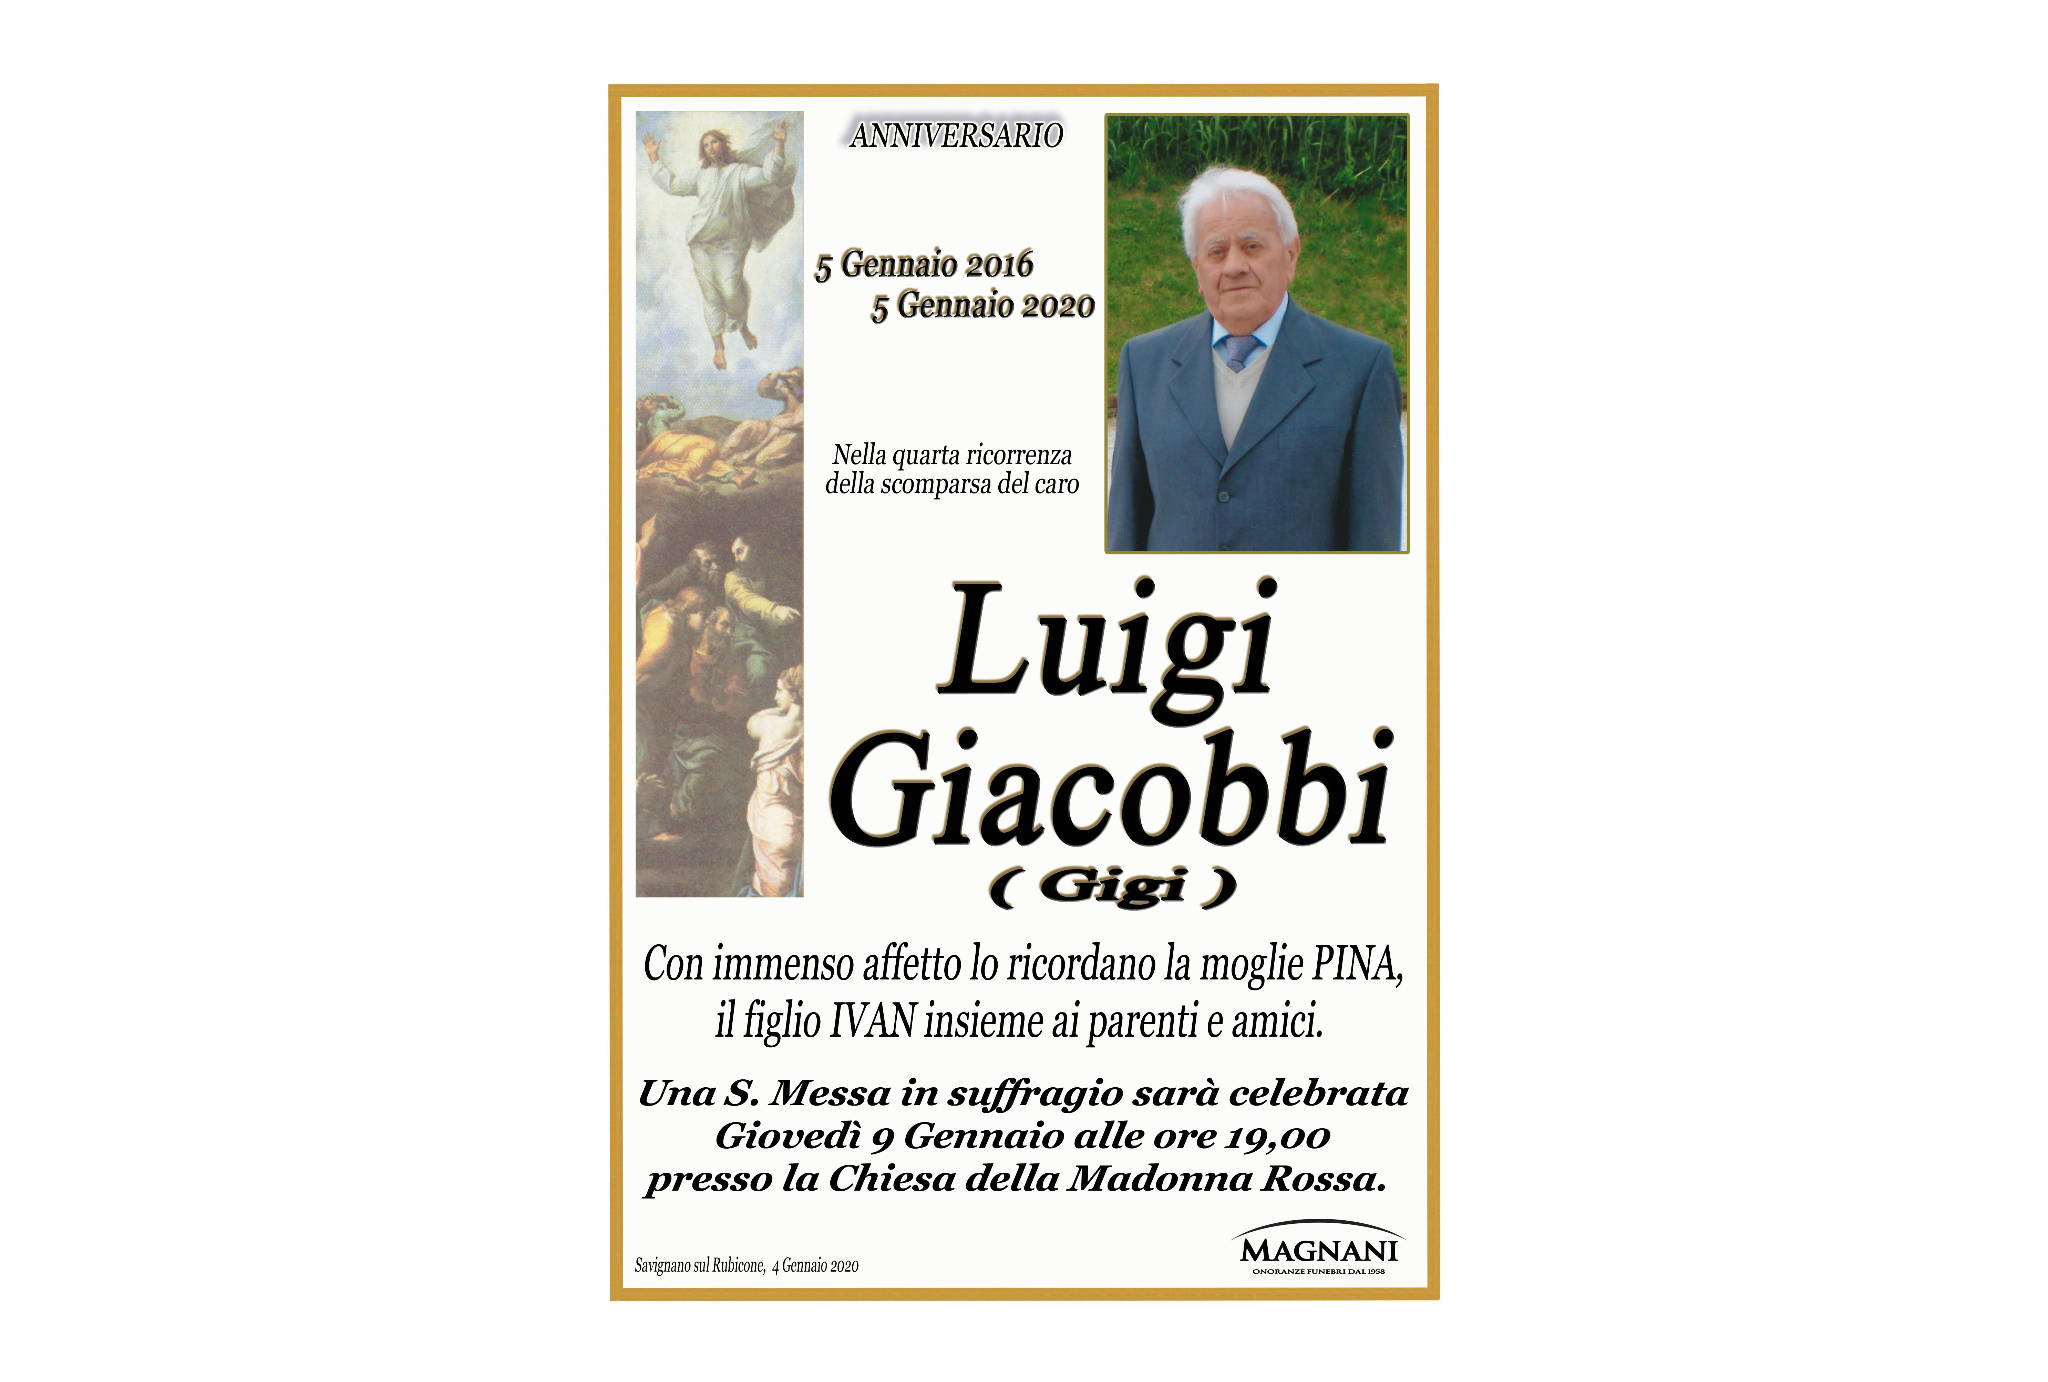 Luigi Giacobbi